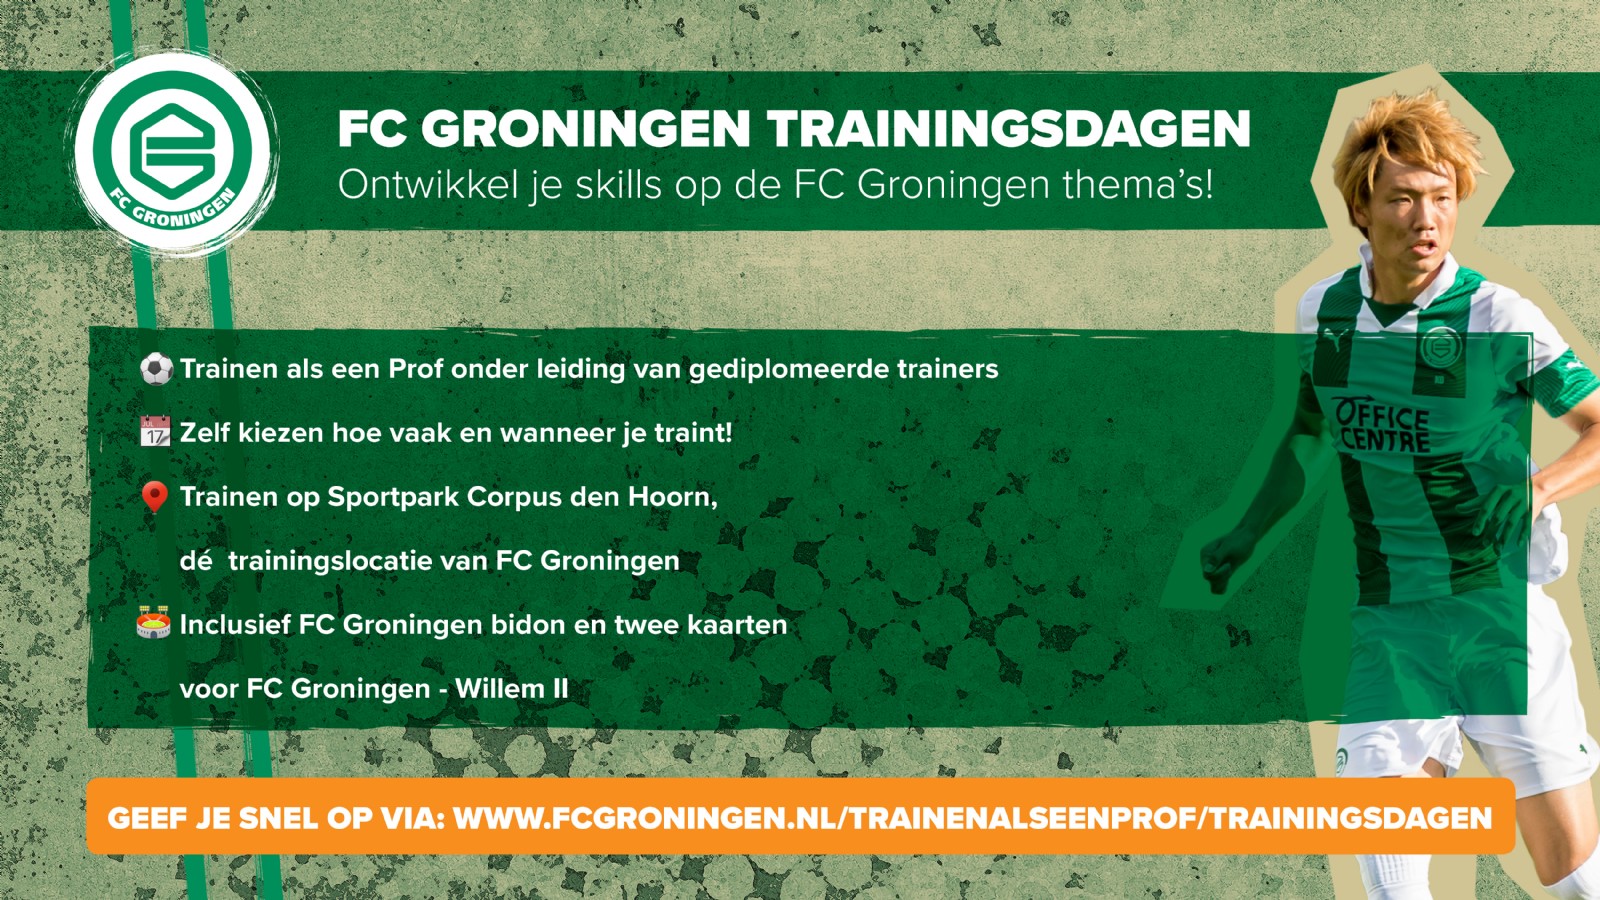 FC-Groningen-trainingsdagen-September-2019-online-aankondiging